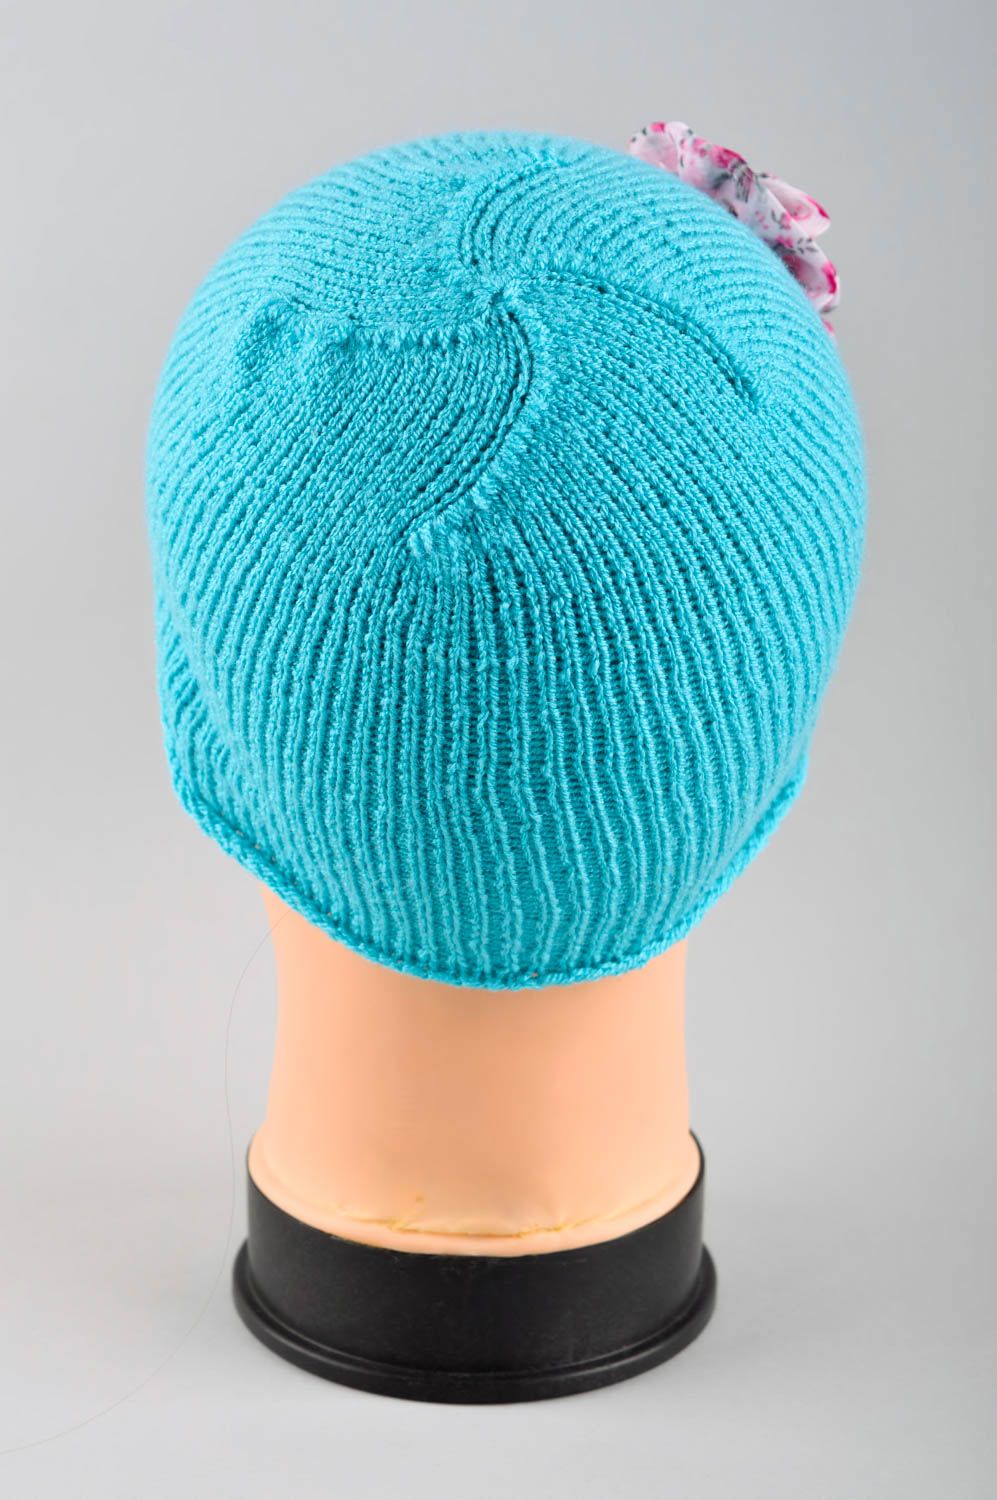 Шапка для девочки ручной работы вязаная шапка голубая зимняя шапка с цветком фото 4